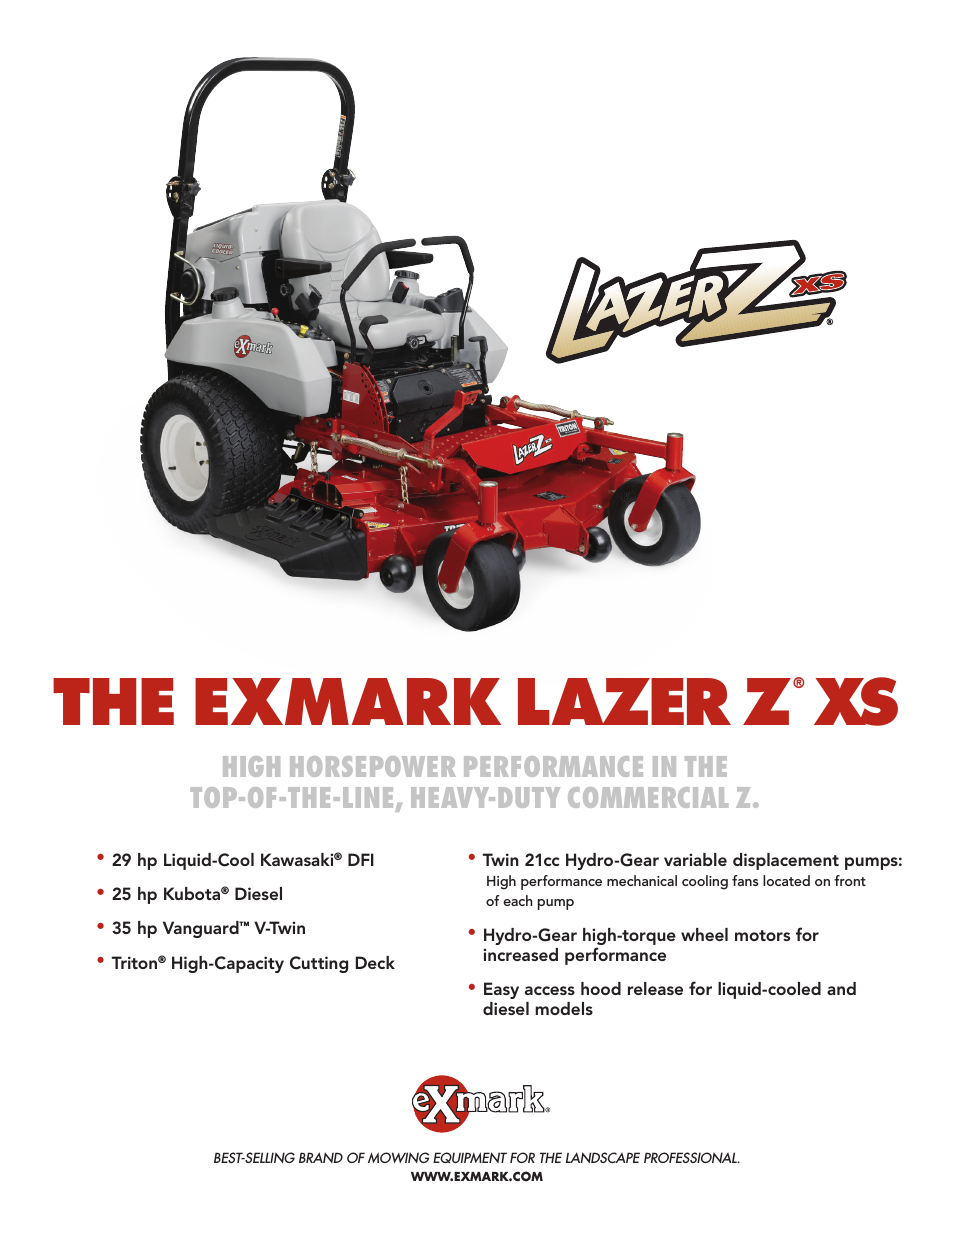 Lazer Z XS lXs25Kd725